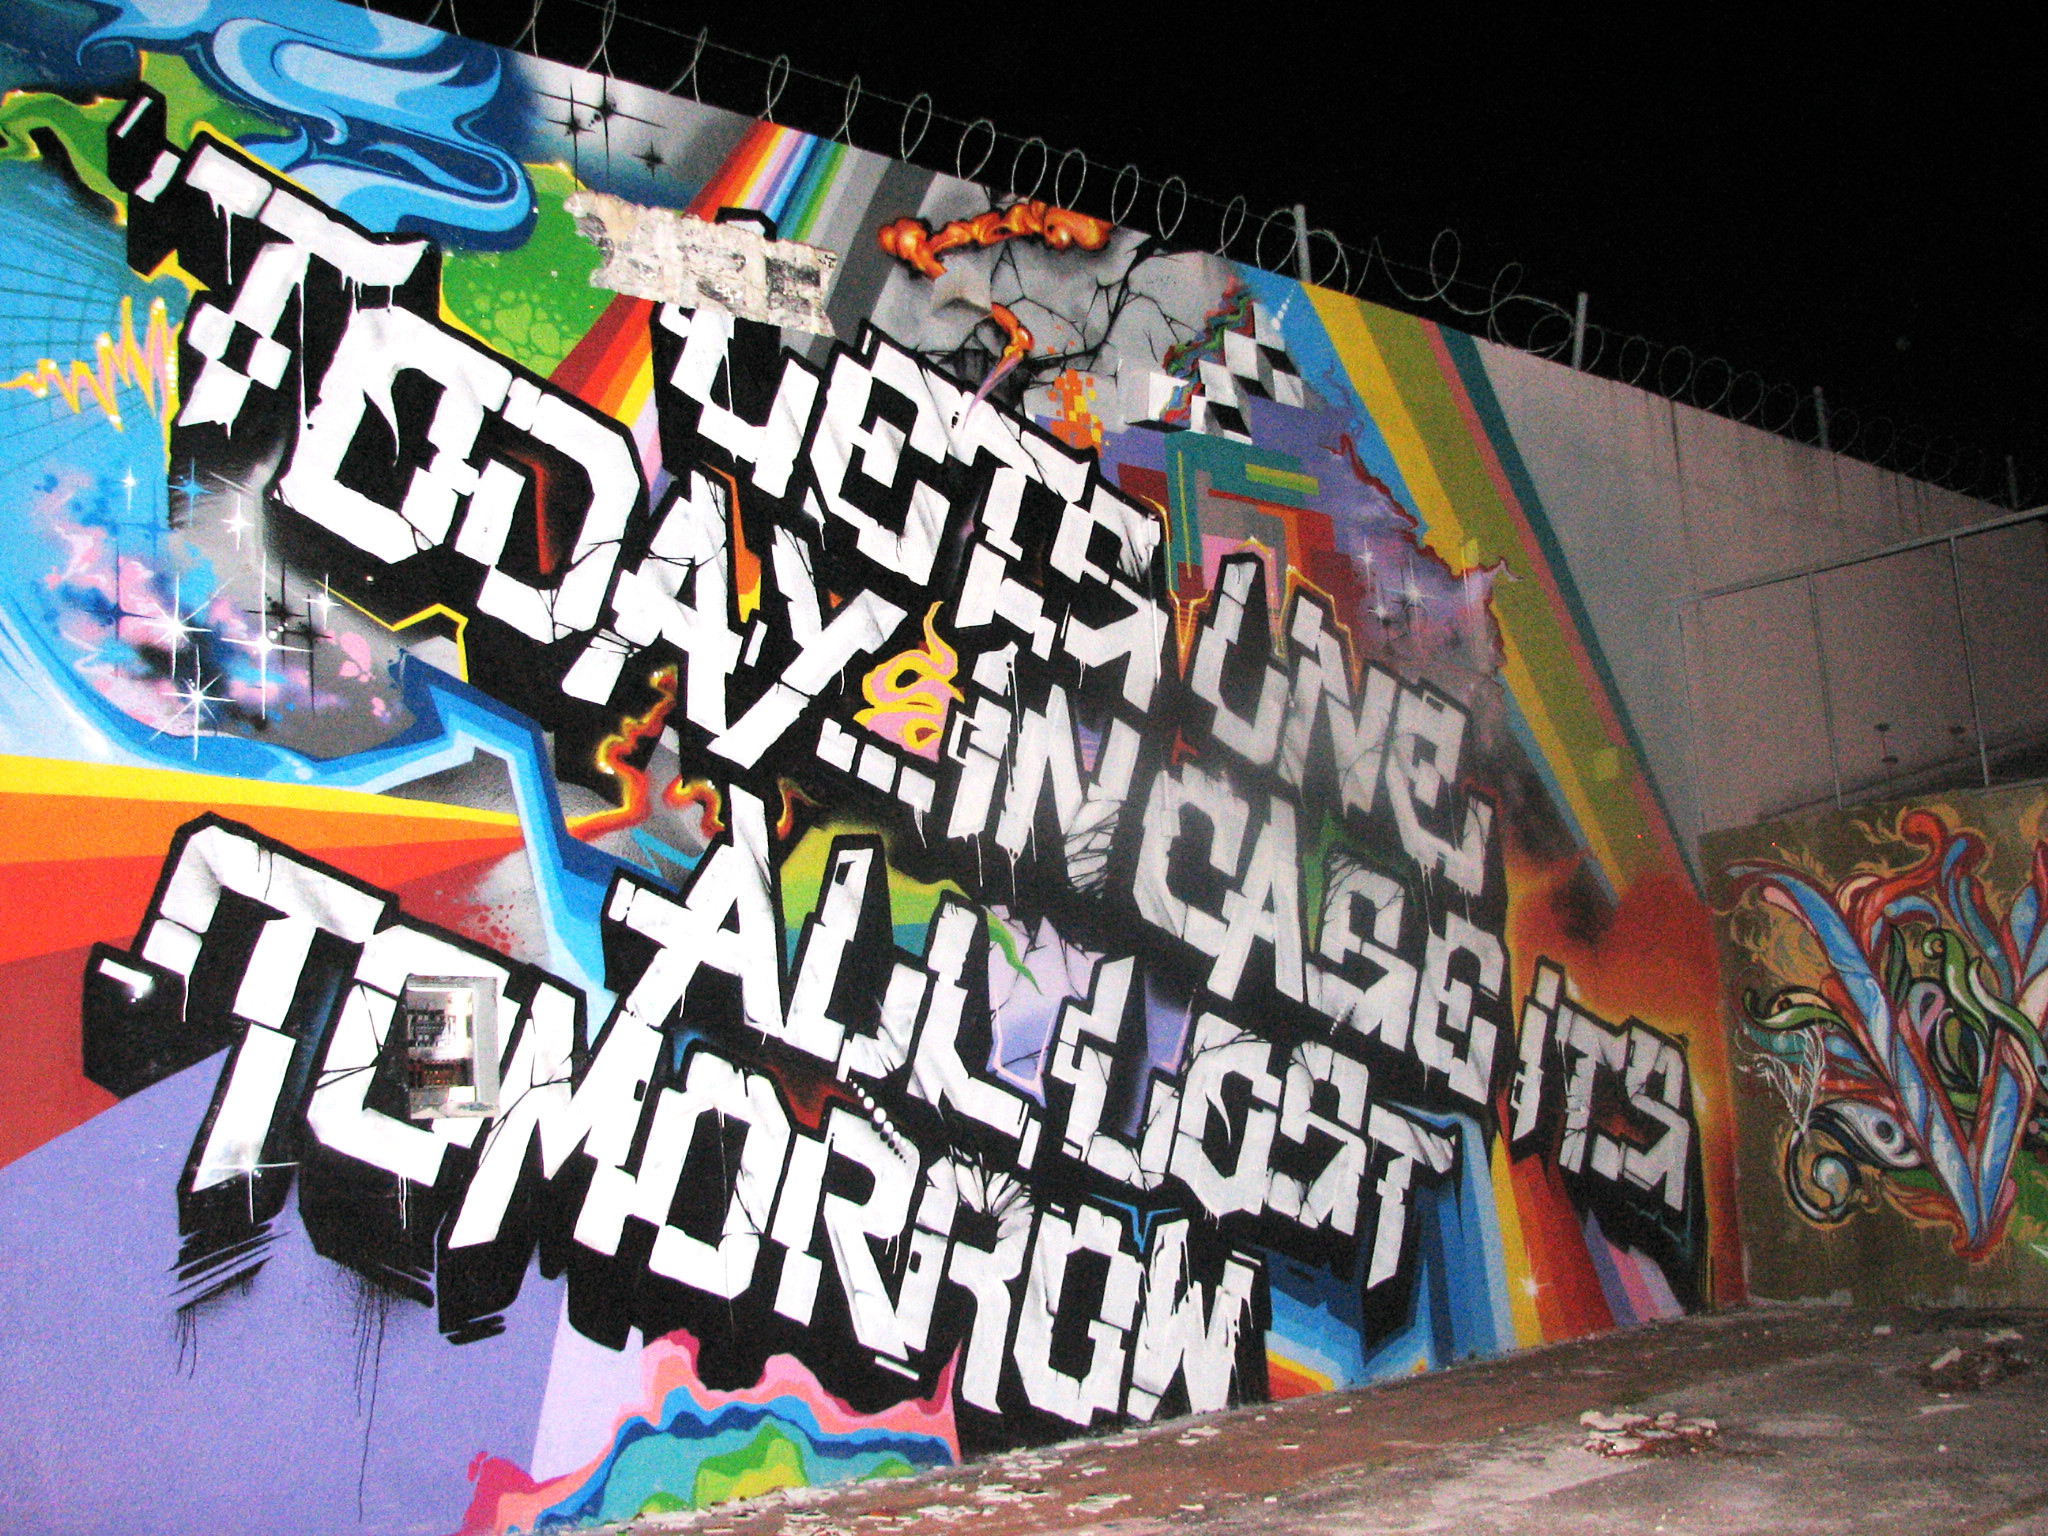 2048x1536 ... Graffiti Walls Miami Street Art & Graffiti Part Two: Graffiti Walls |  Art Nectar ...